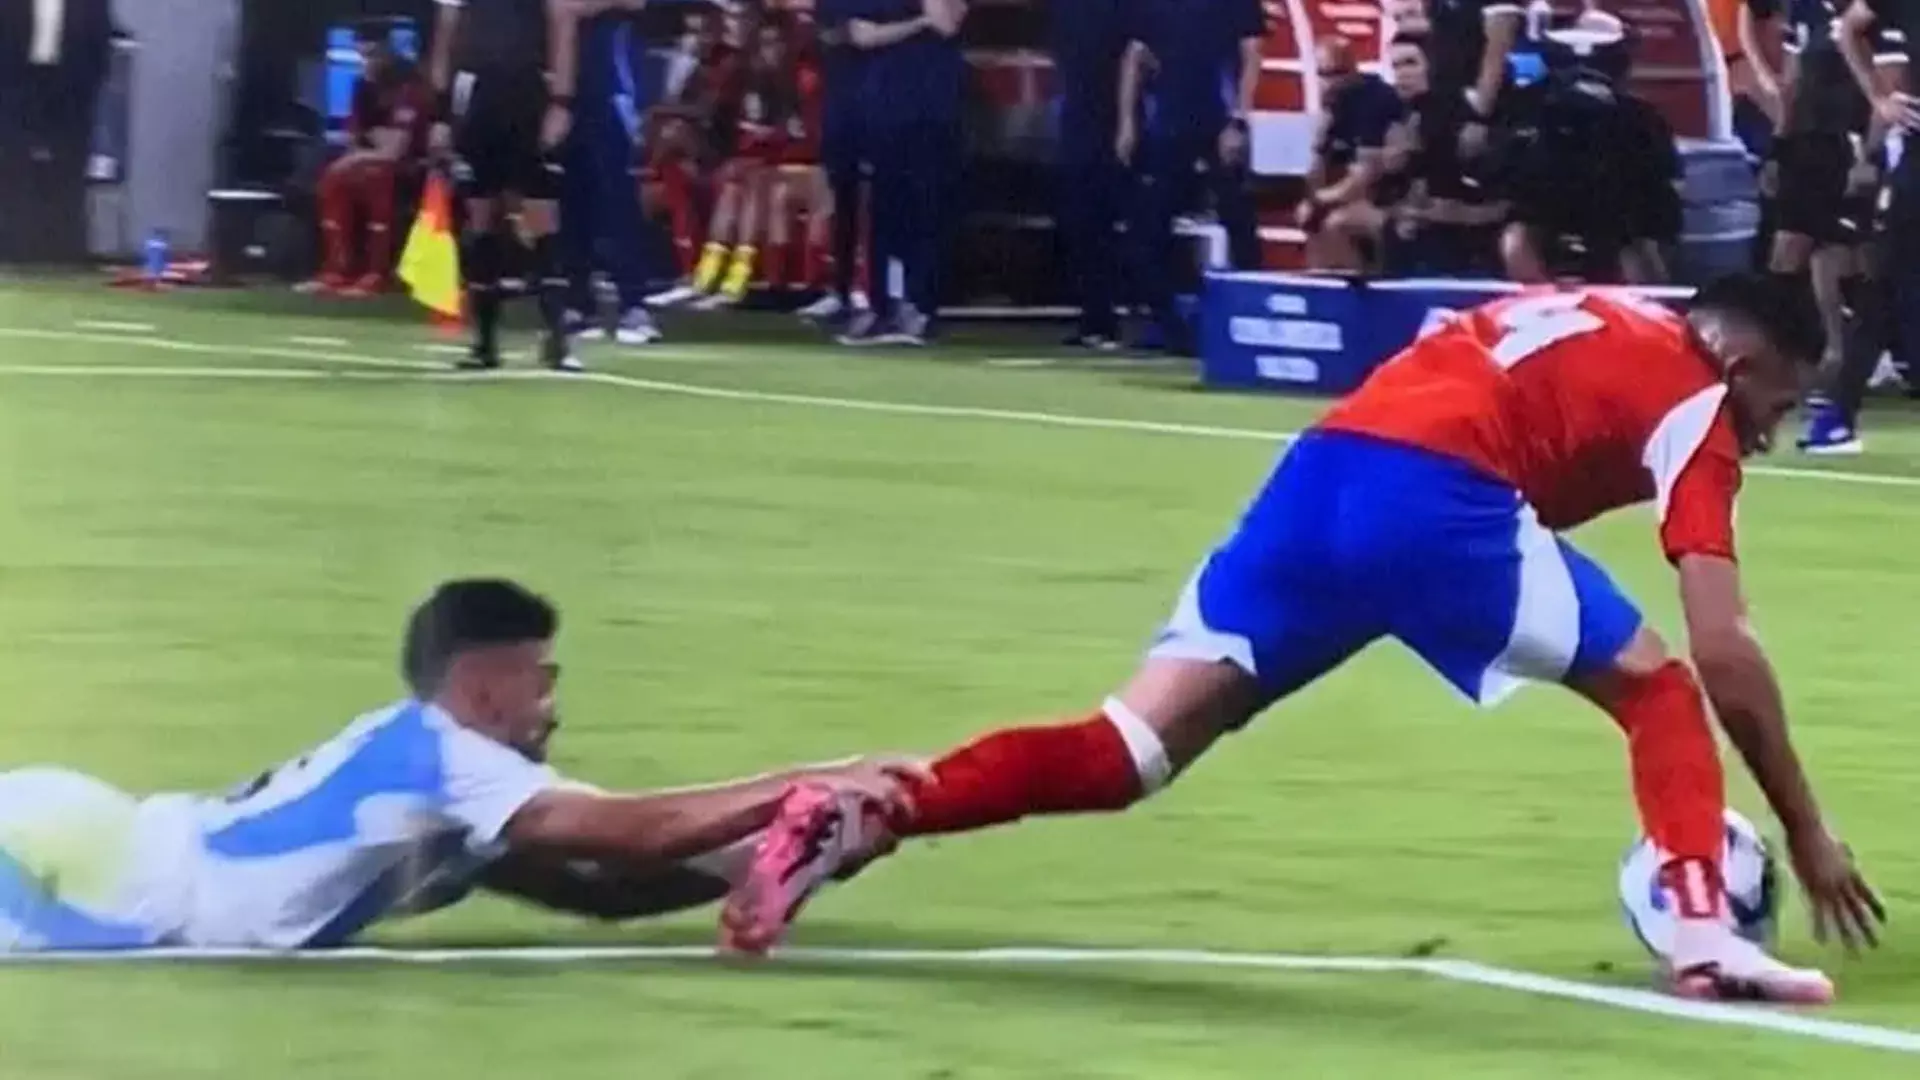 Argentine के खिलाड़ी ने चिली के खिलाड़ी के पैर पकड़कर उसे रोका, फिर भी कार्ड नहीं मिला